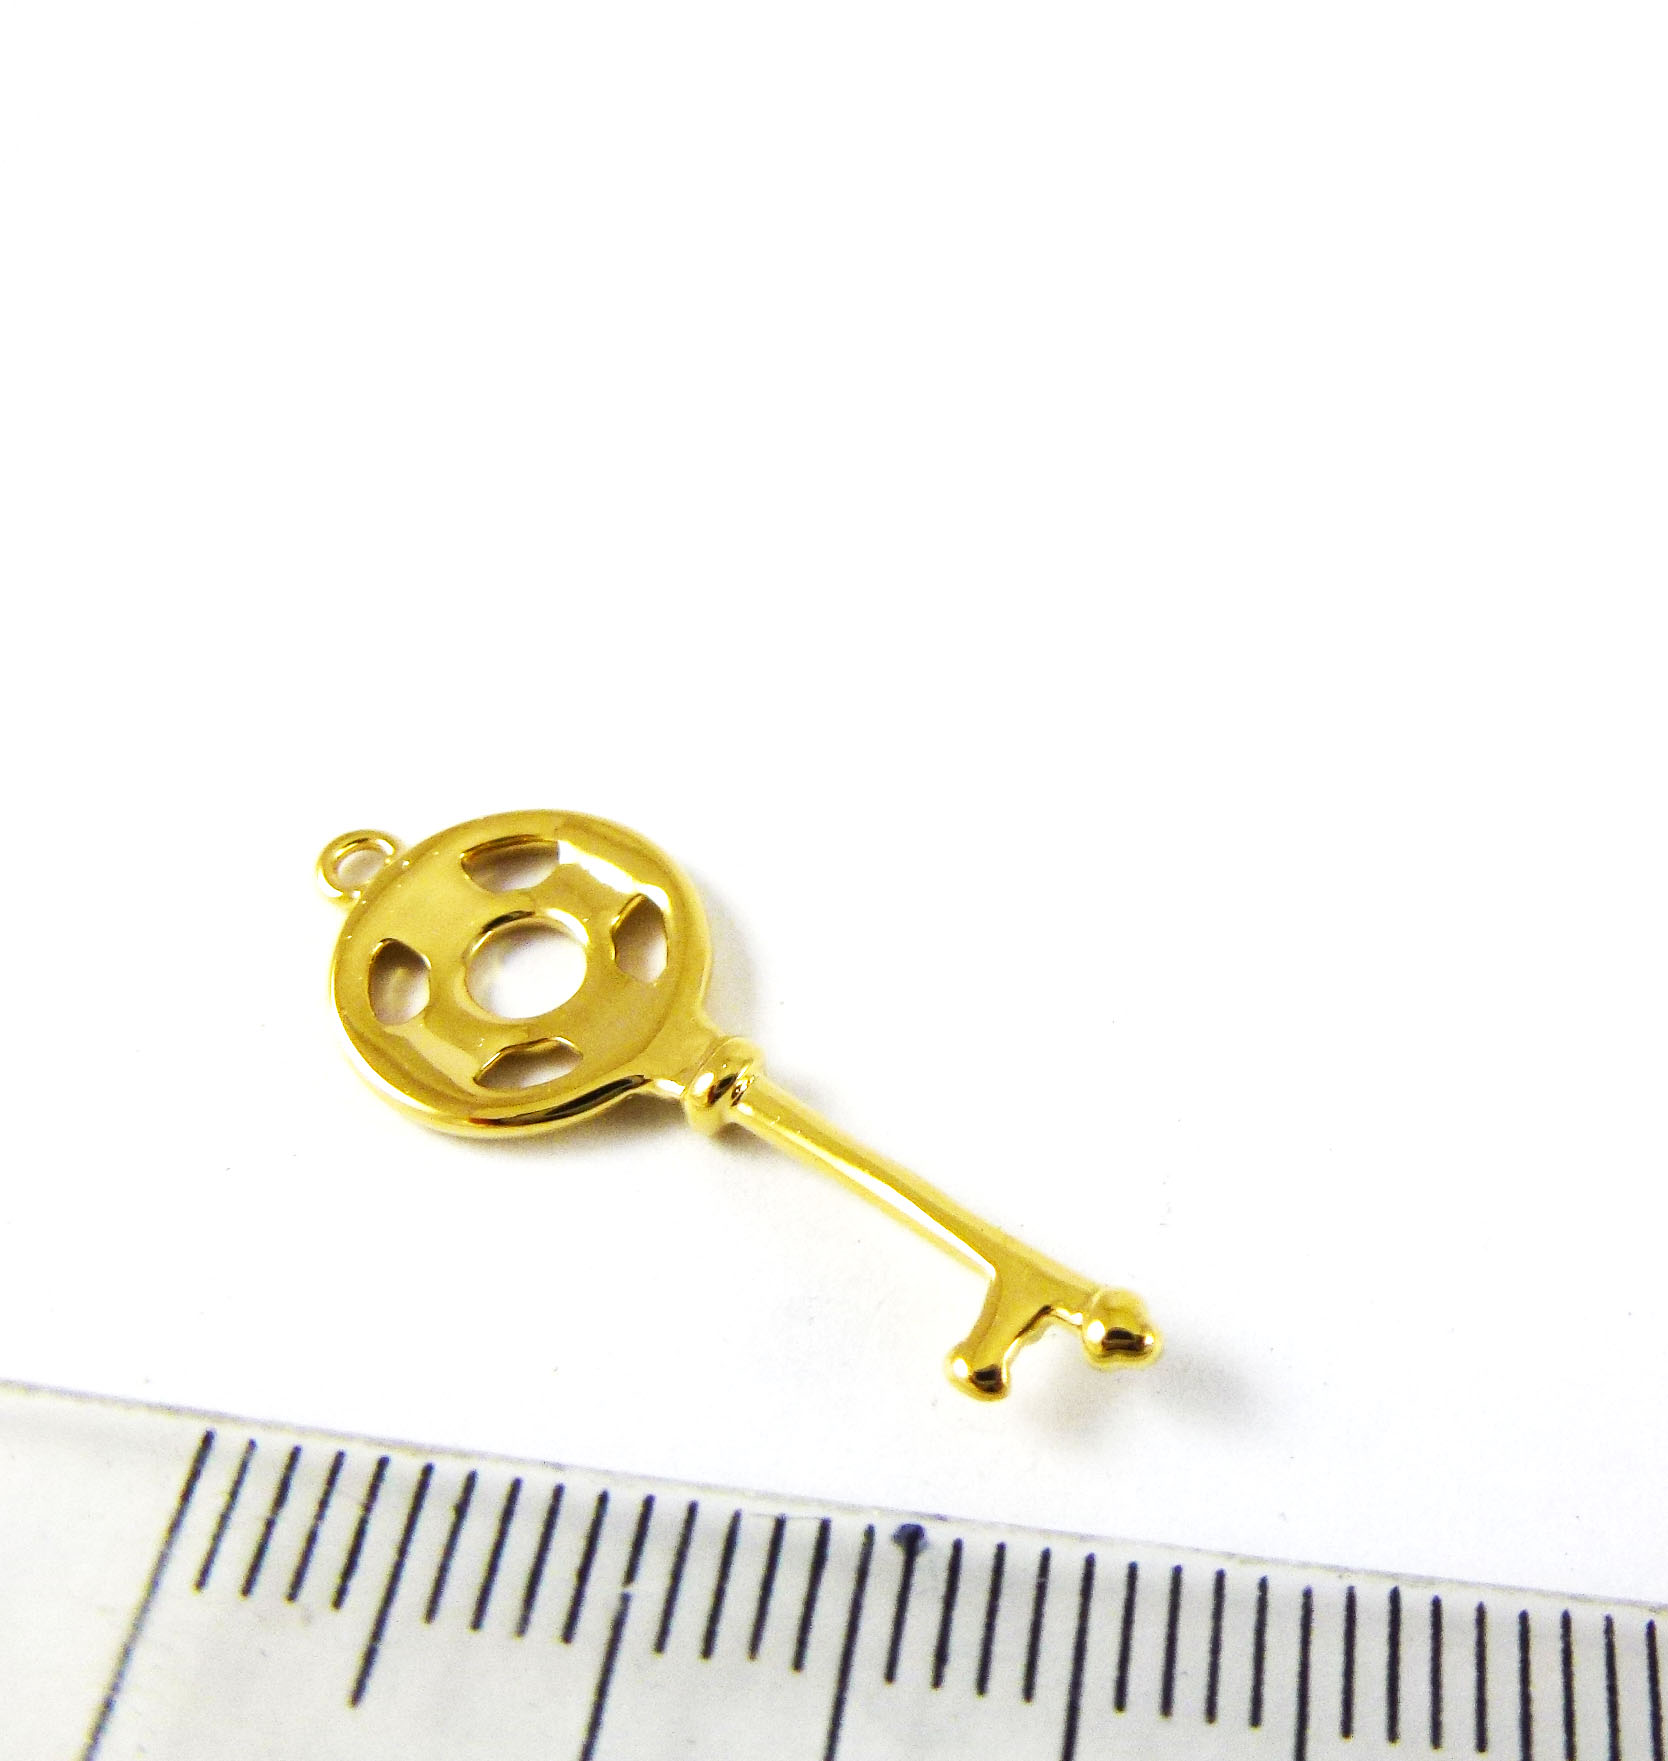 銅鍍金色單孔圓圈鑰匙